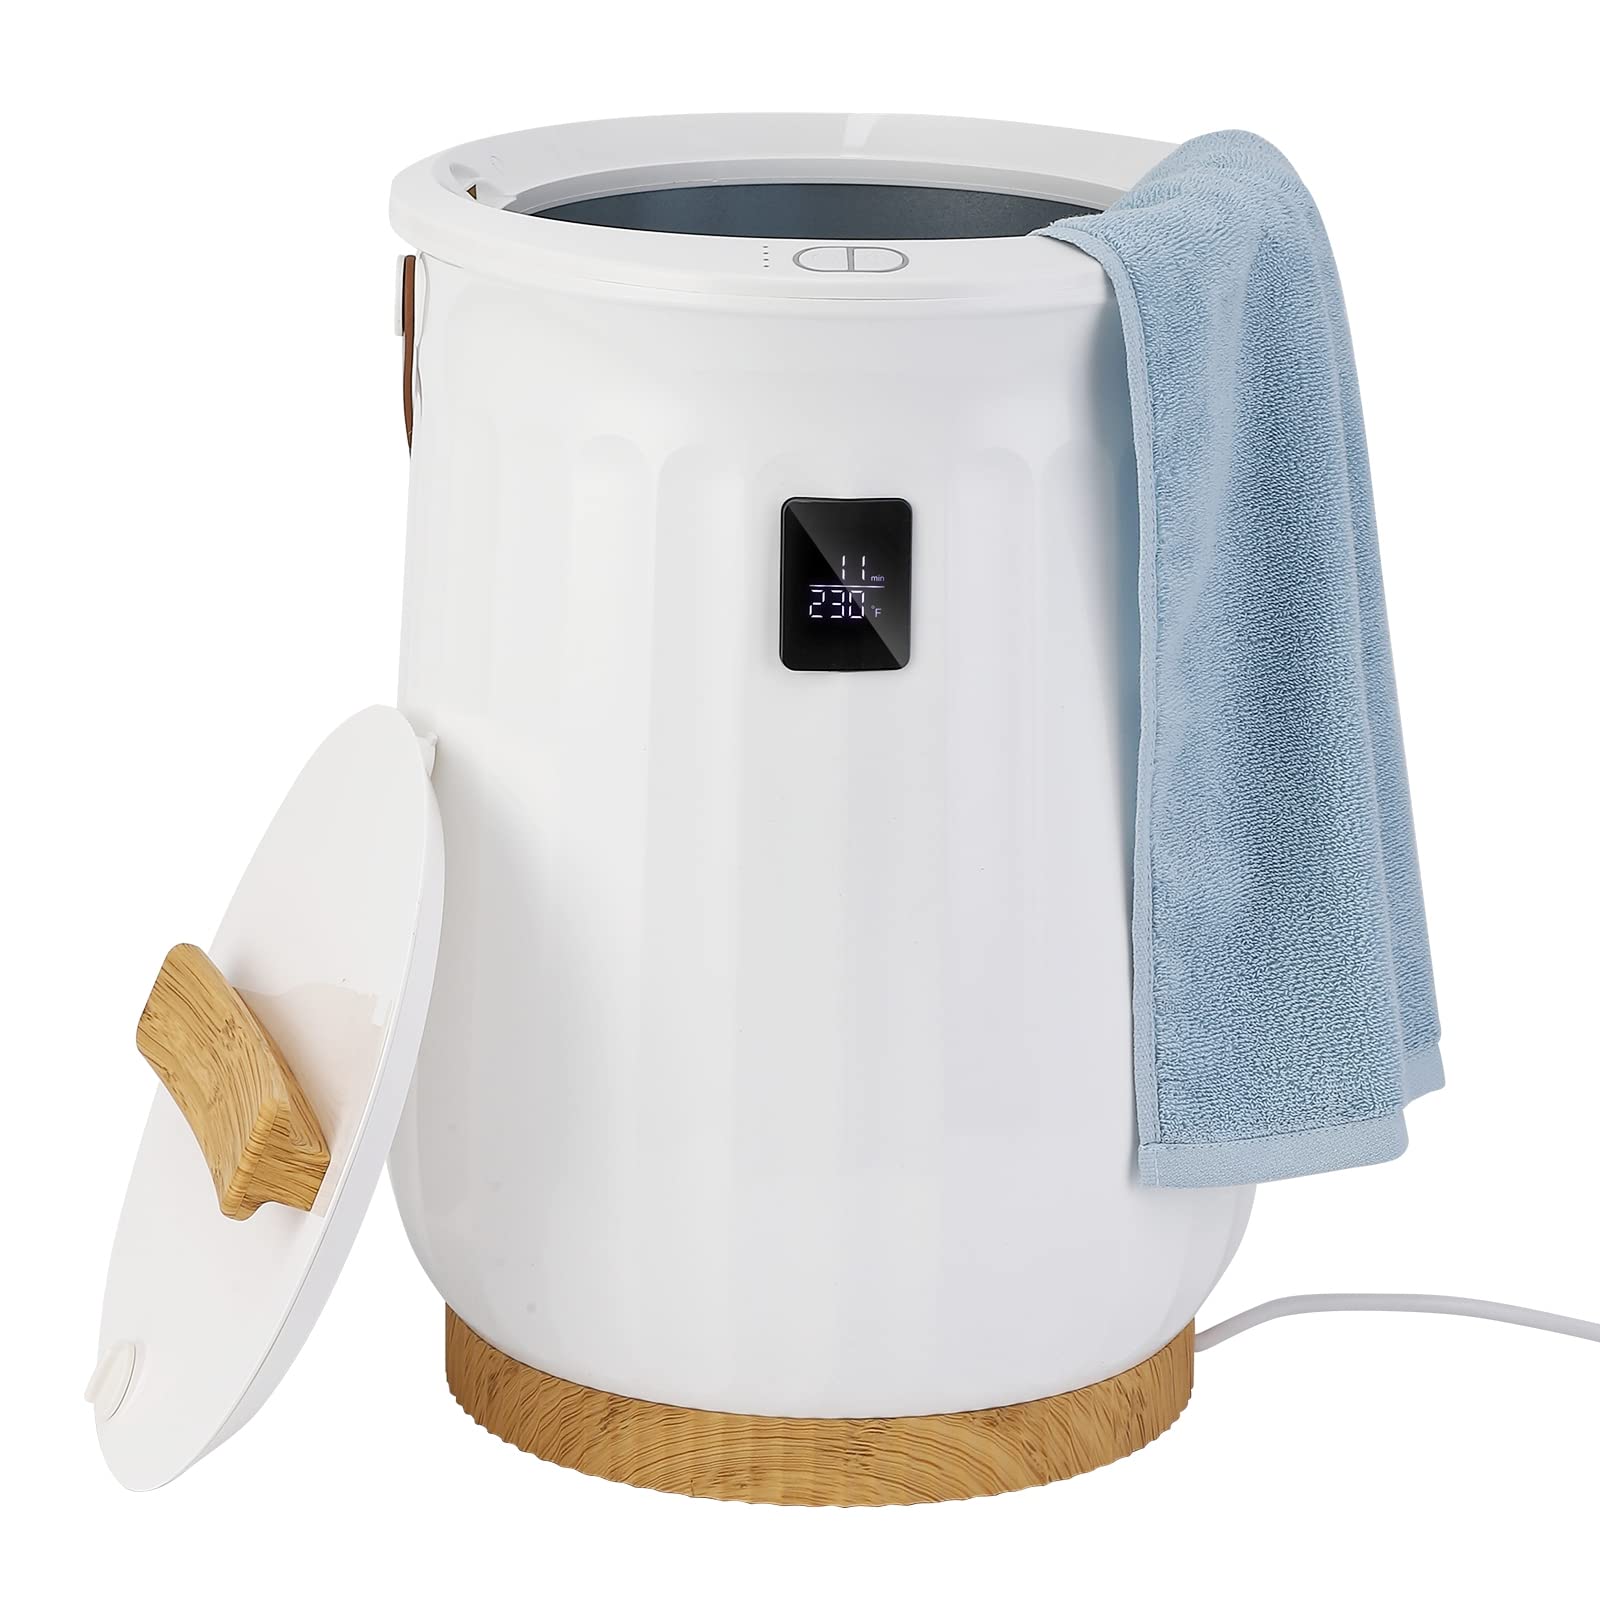 GARVEE Towel Warmers 20L 450W Luxury Large Towel Warmer Bucket For Bathroom With Digital LCD